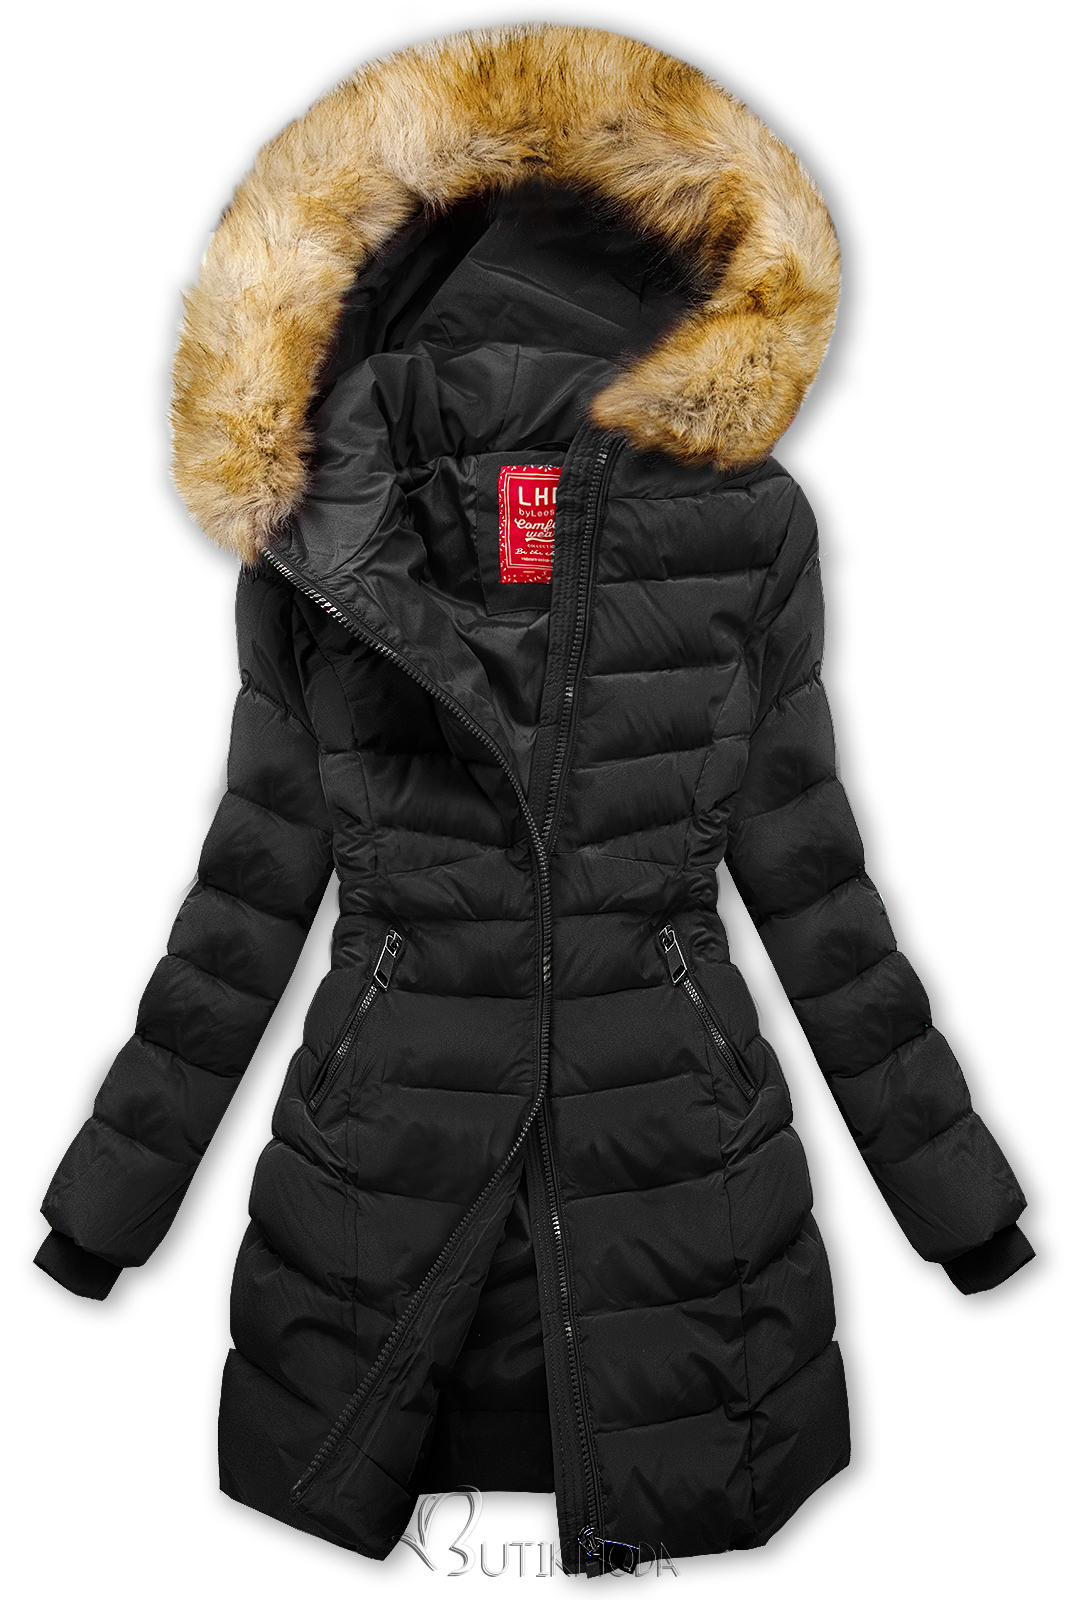 Fekete színű steppelt téli kabát műszőrmével